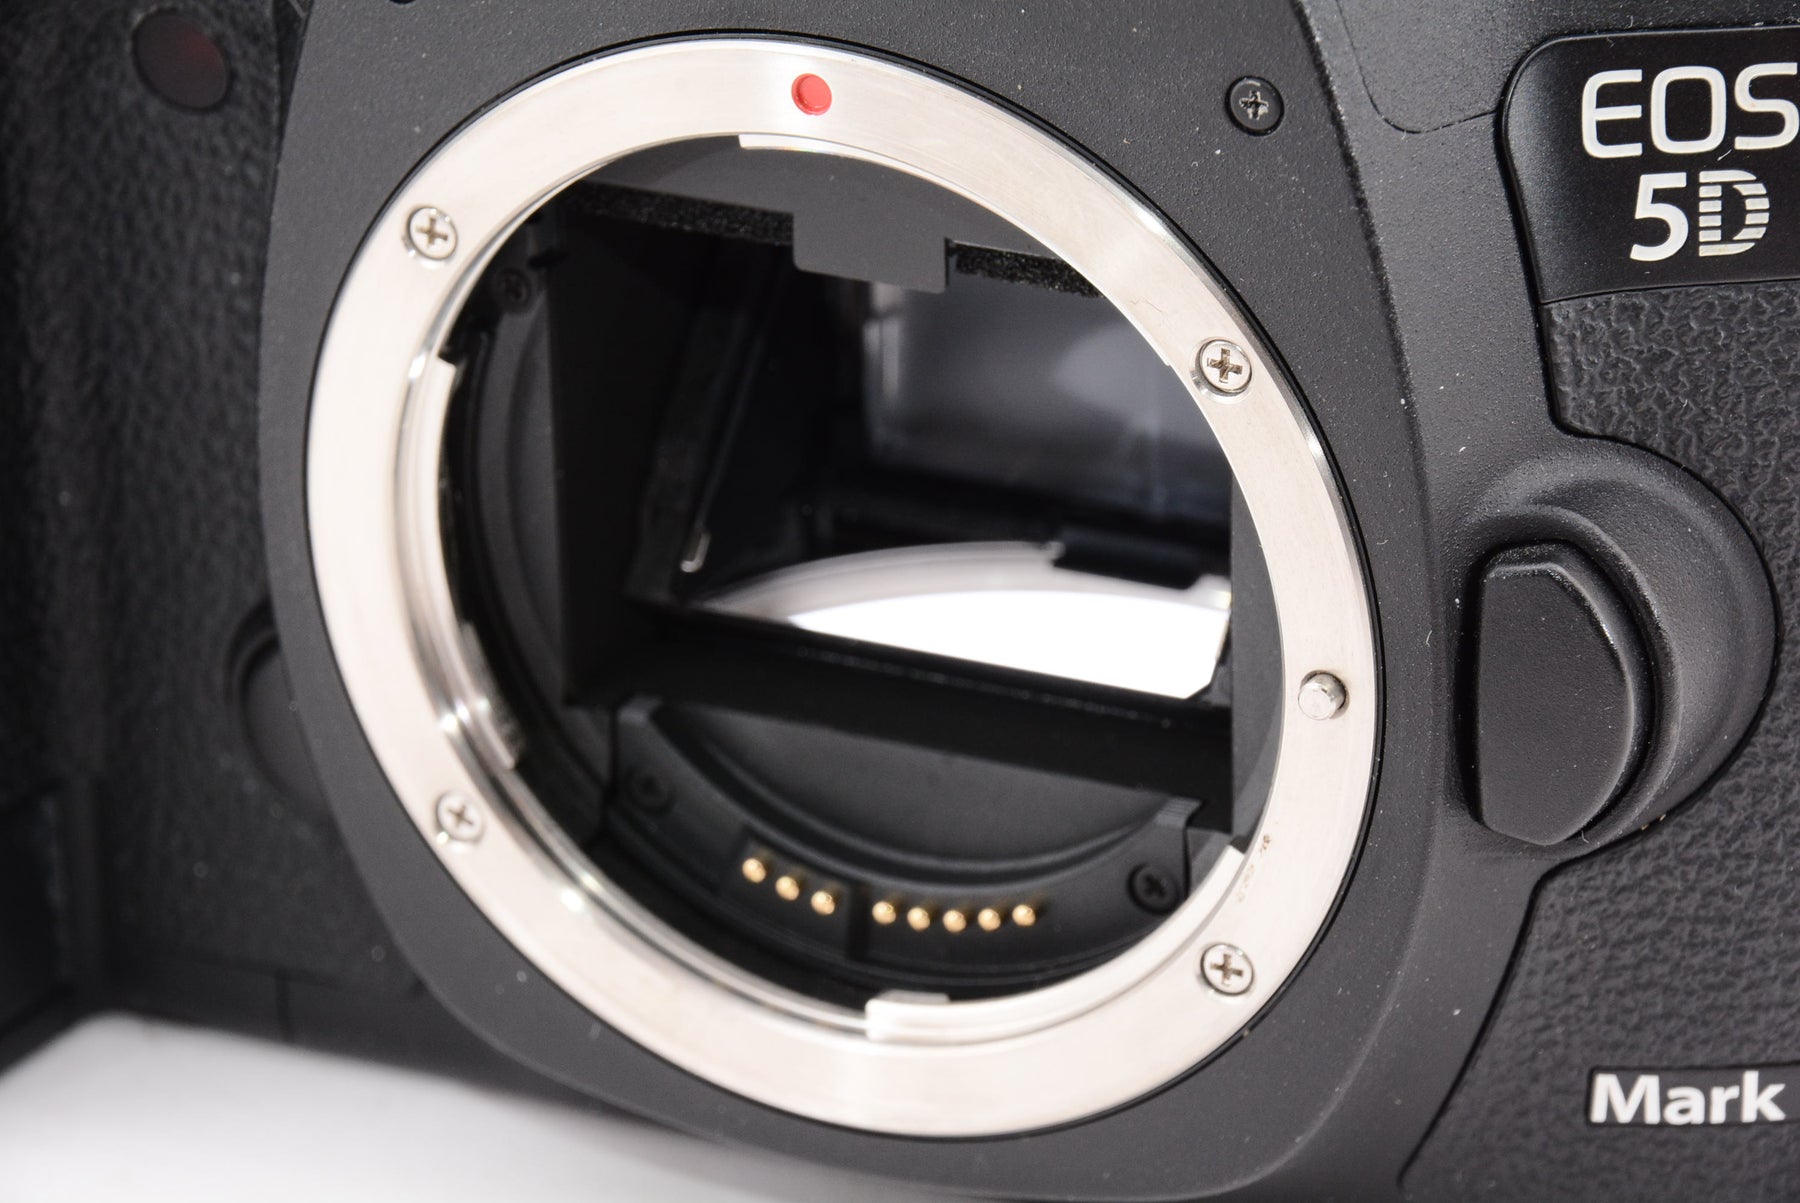 外観特上級】Canon デジタル一眼レフカメラ EOS 5D Mark III ボディ EOS5DMK3